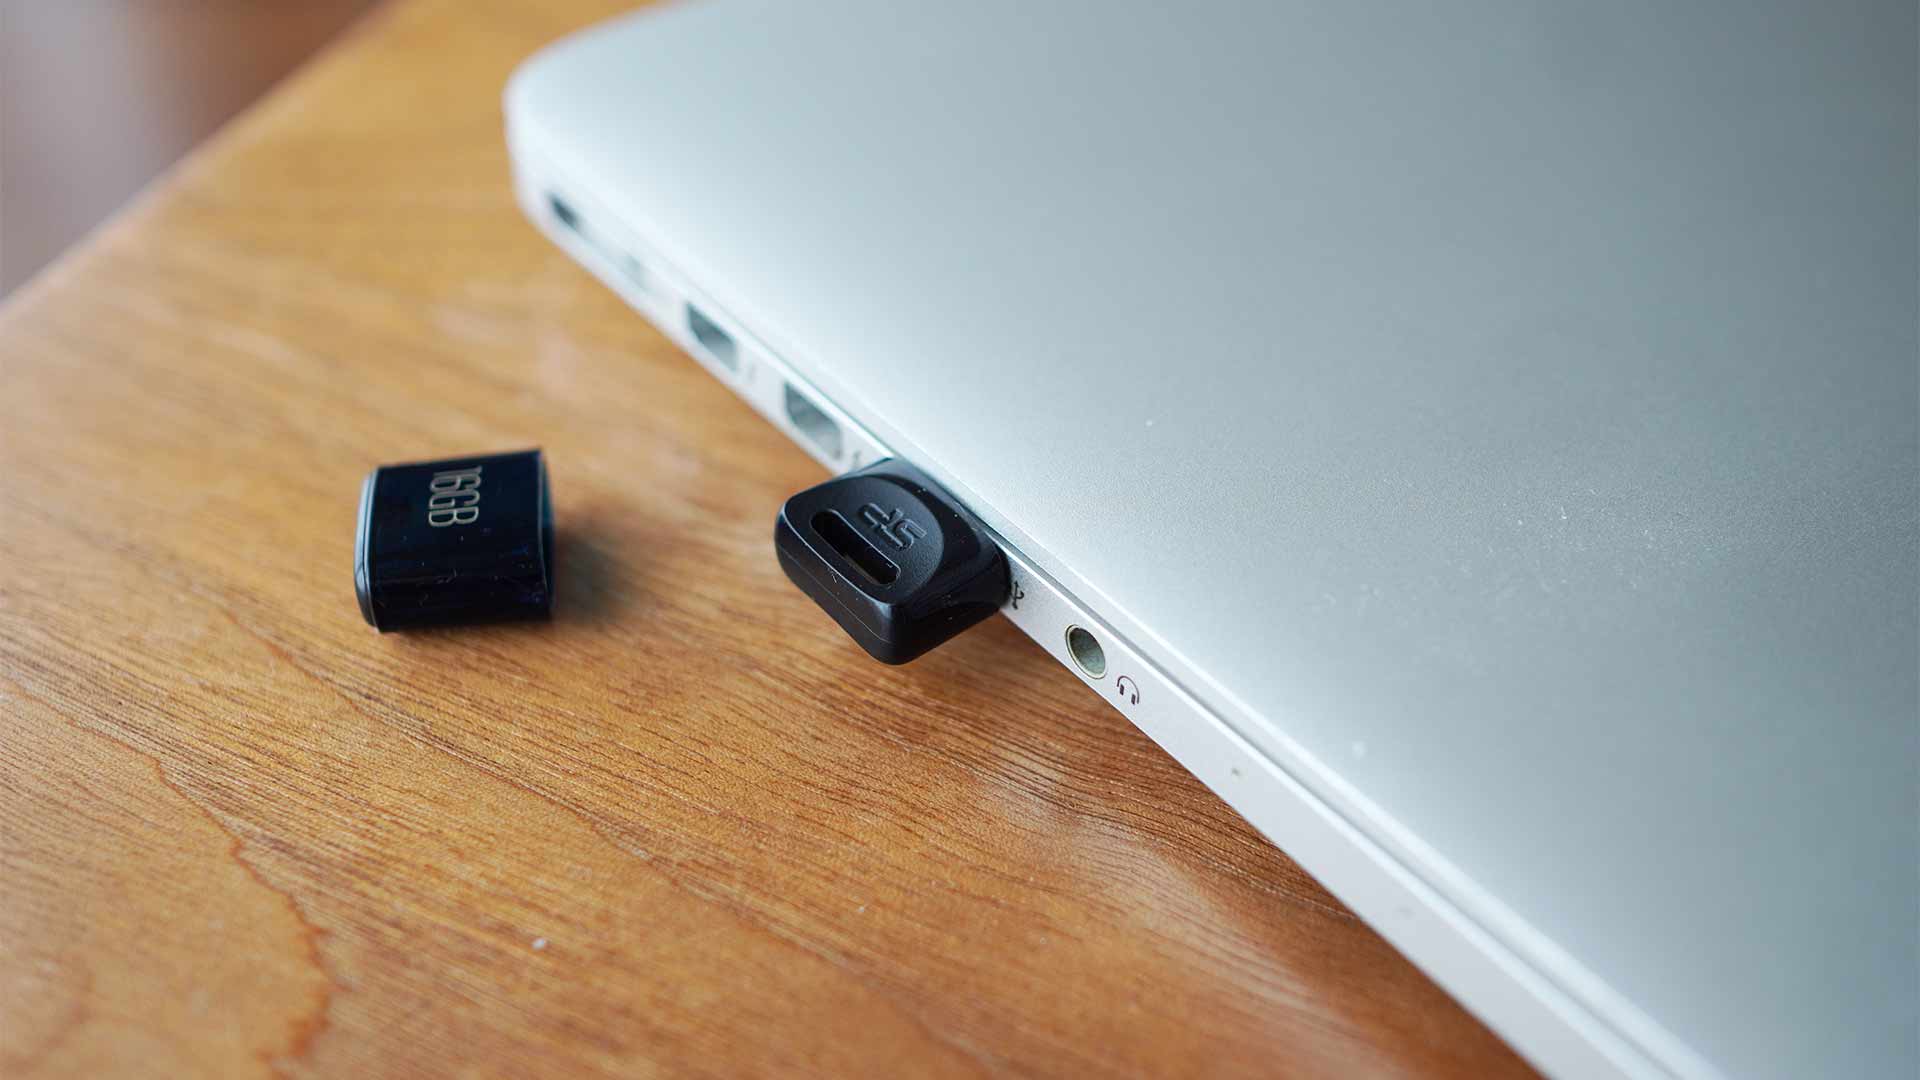 USBメモリー,シリコンパワー,小さい,コンパクト,軽い,安い,